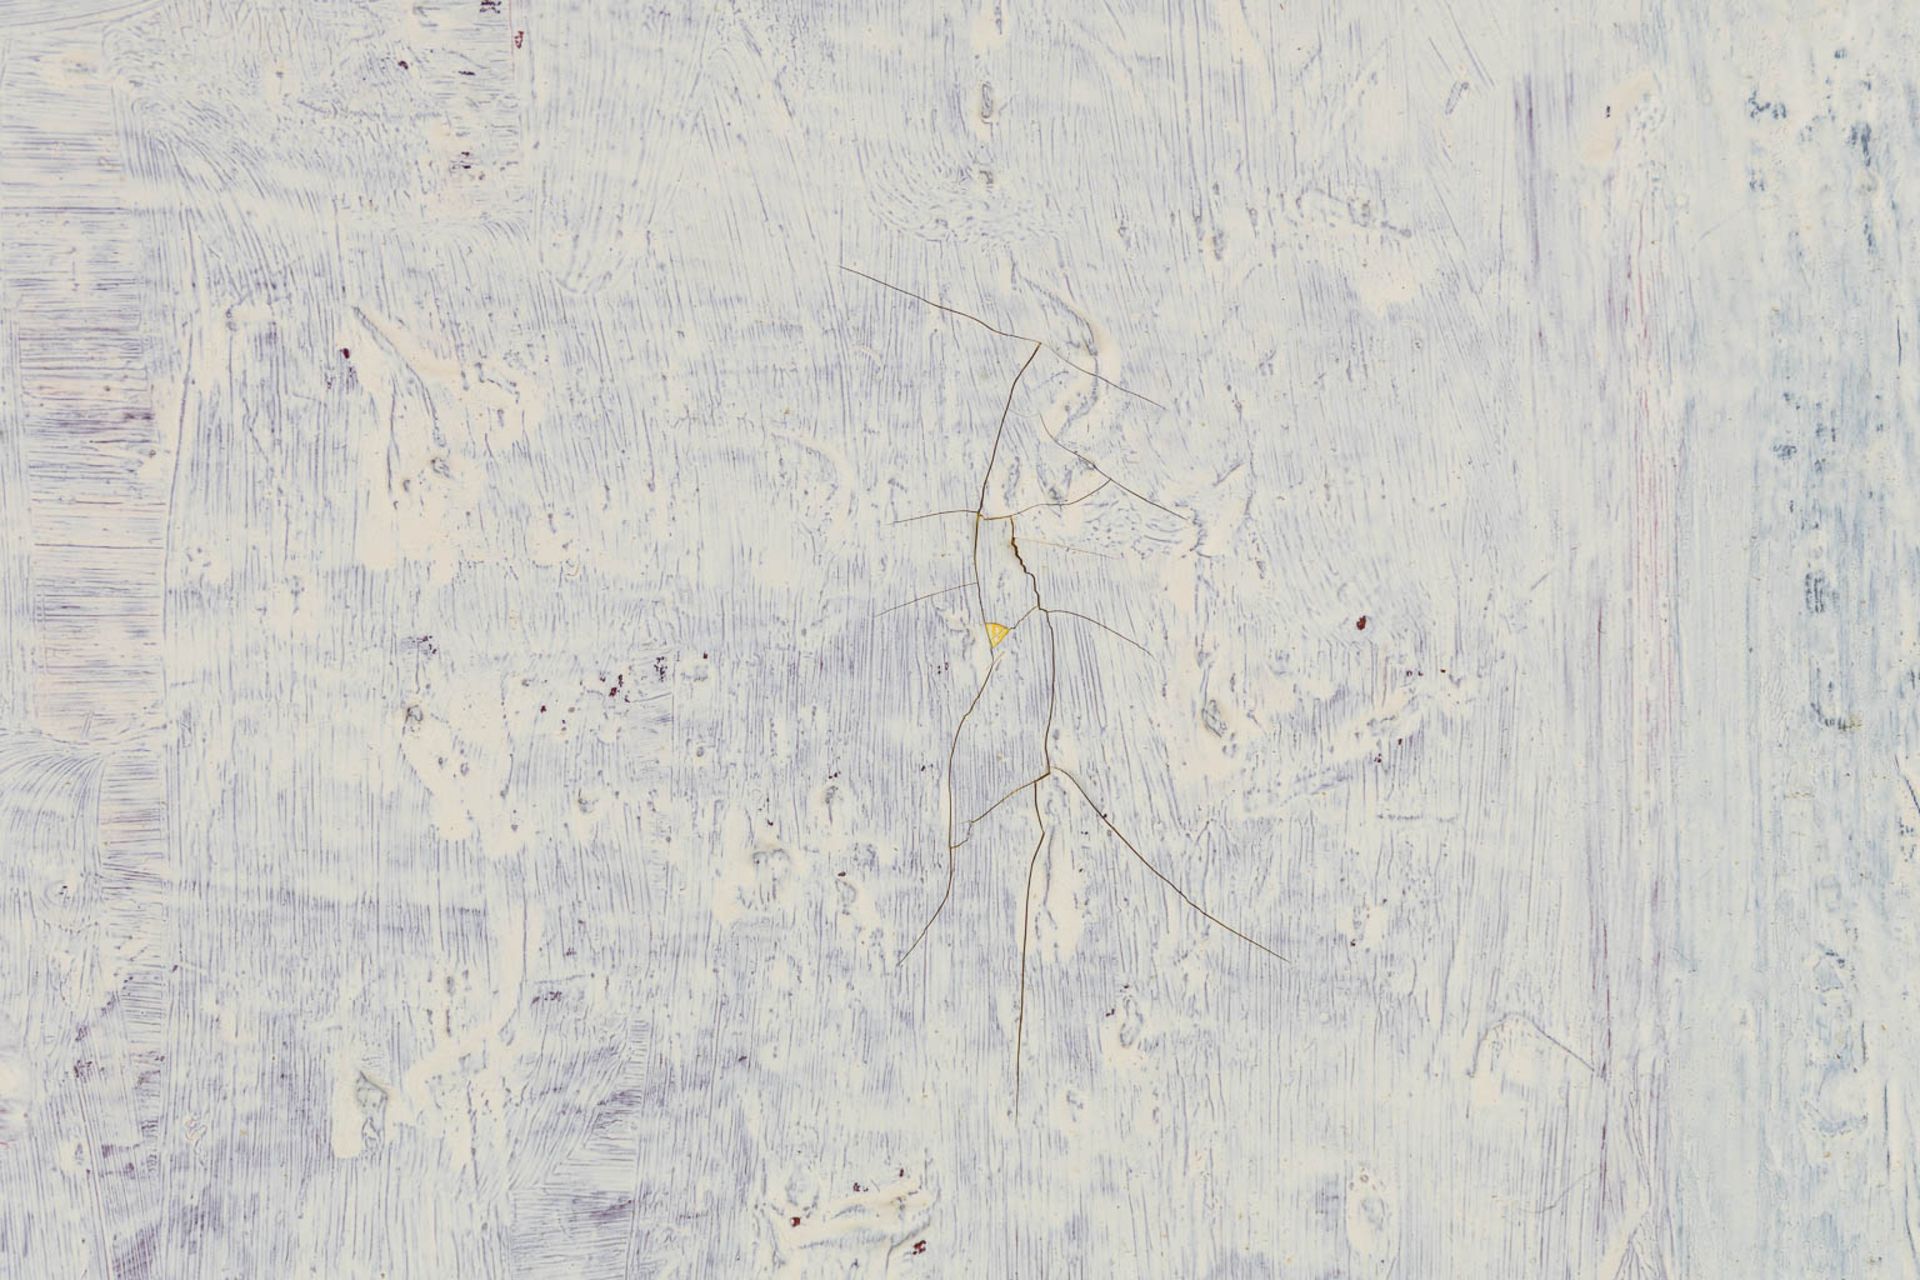 Huguette VAN DEN KIEBOOM (1931 - 2019) 'Abstract Wit' oil on canvas. (W:60 x H:70 cm) - Image 7 of 9